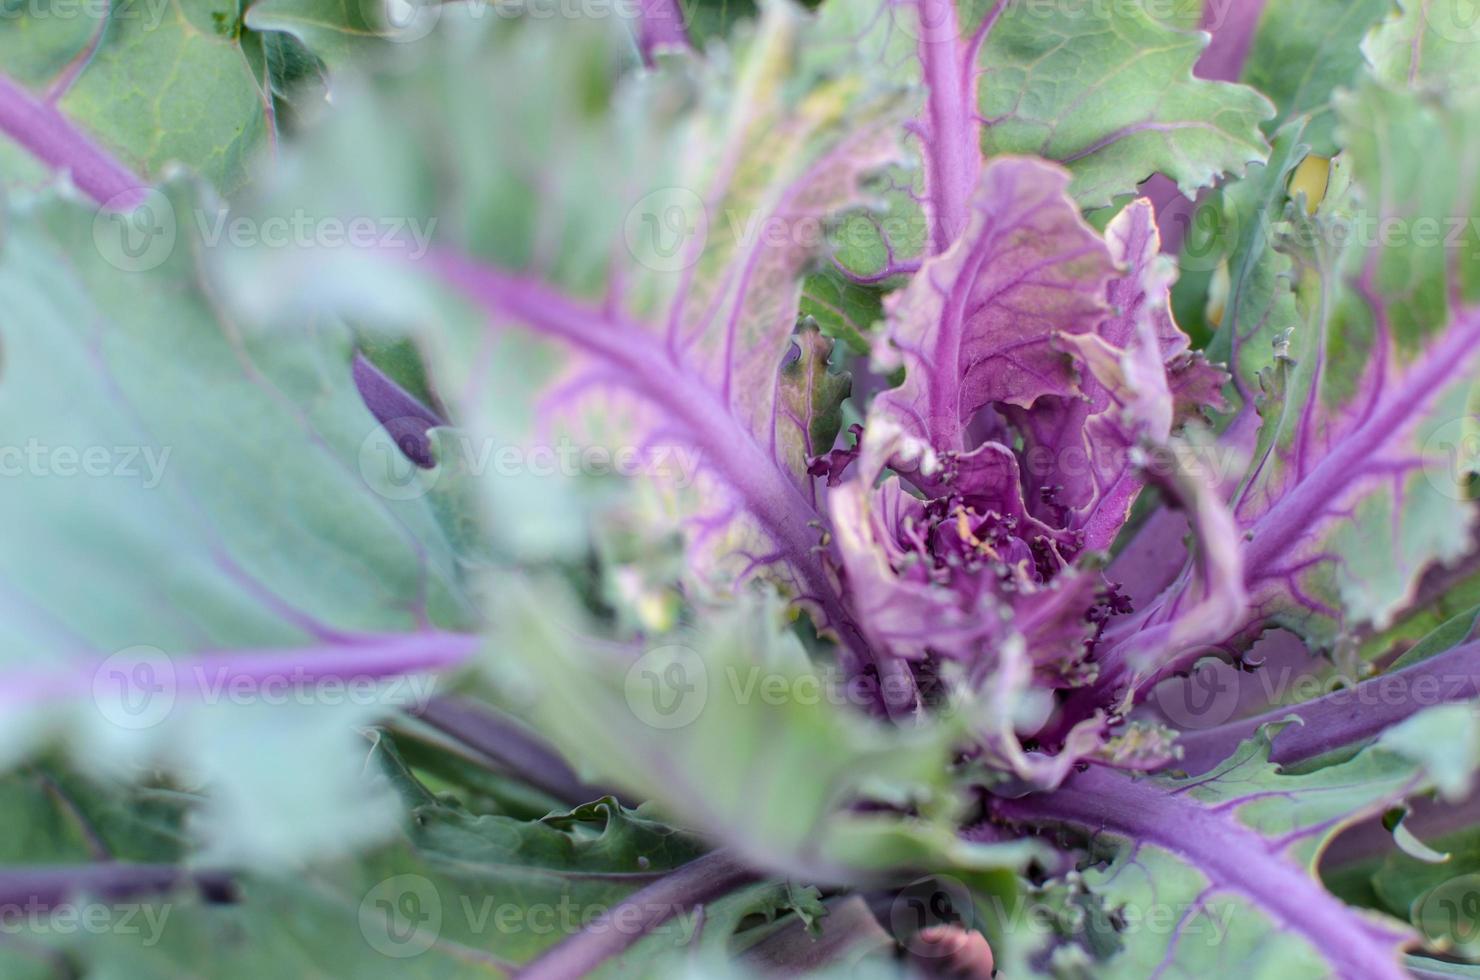 repolho verde e roxo ou planta vegetal de repolho com cabeça violeta foto